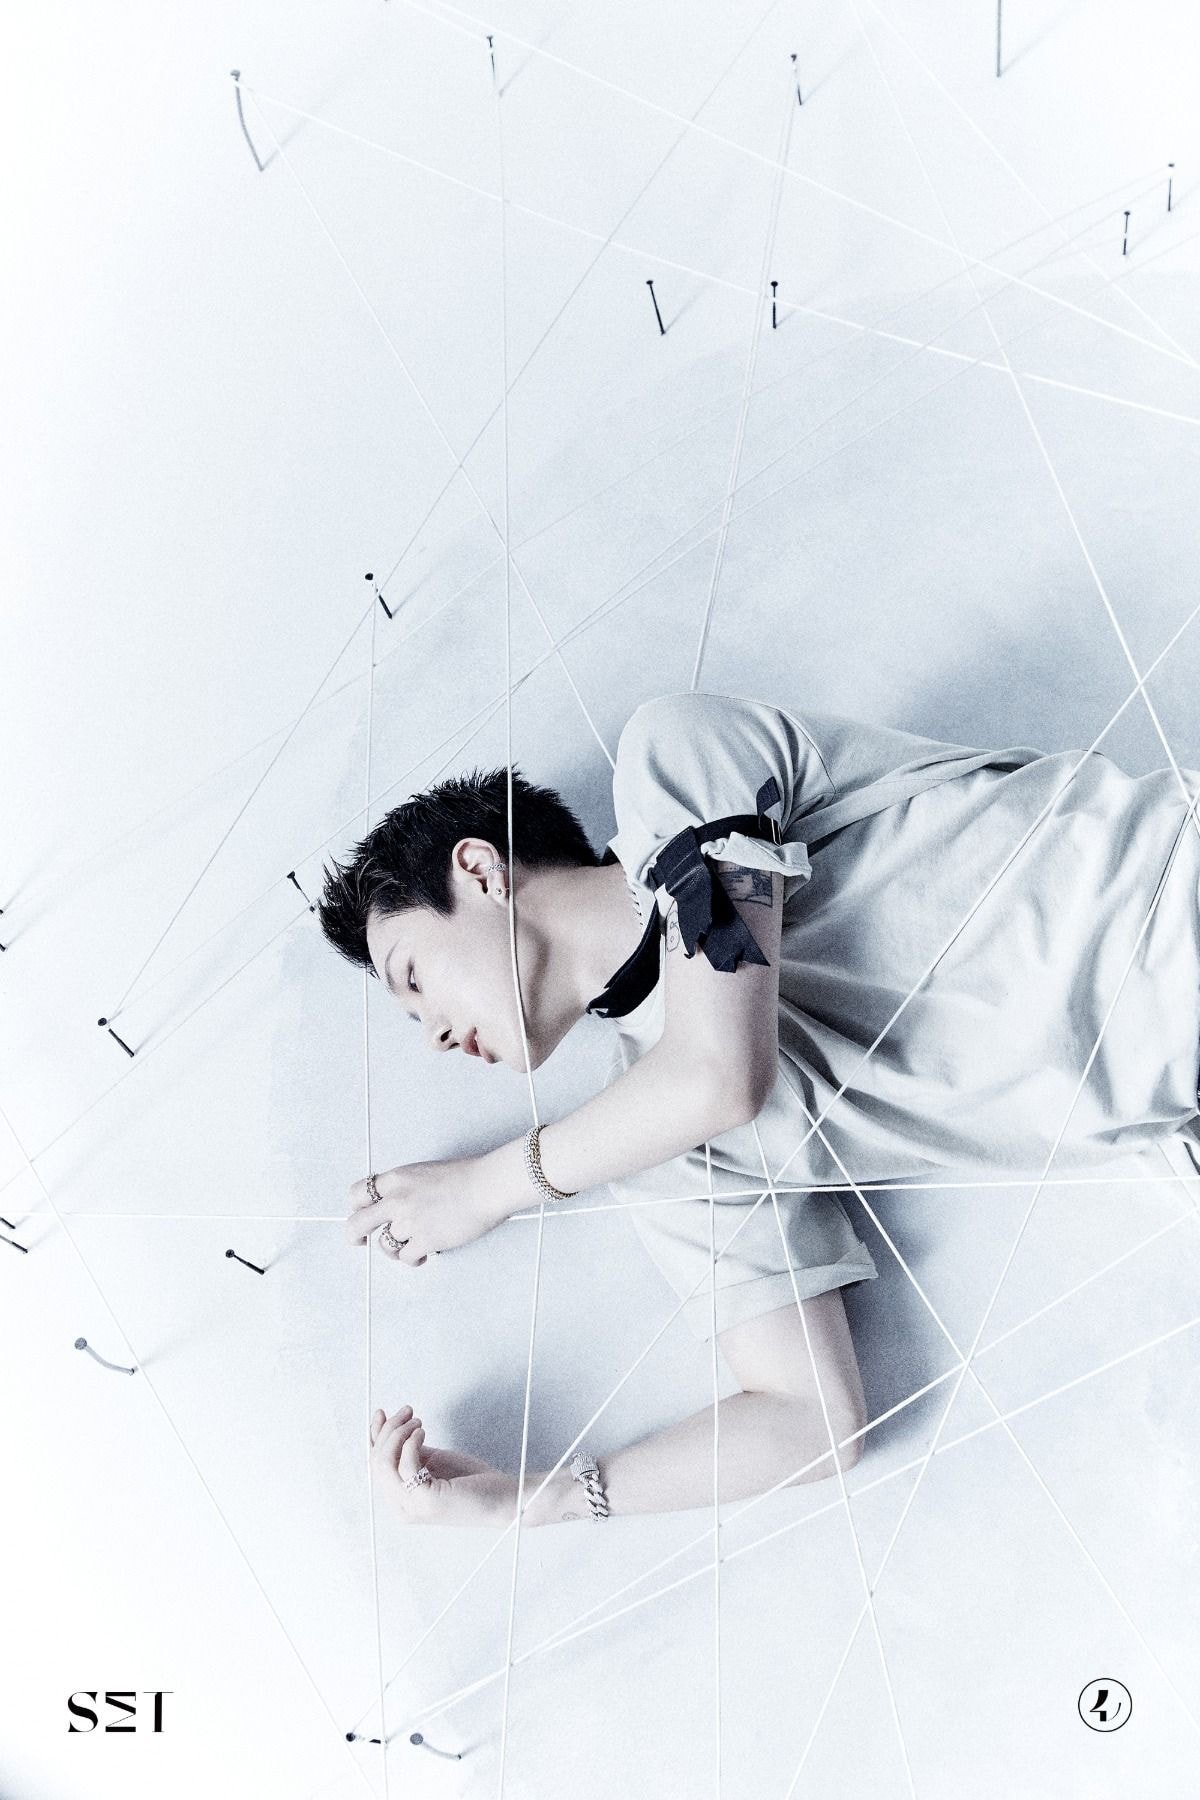 WOODZ(조승연) Single Album [SET] CONCEPT PHOTO #2